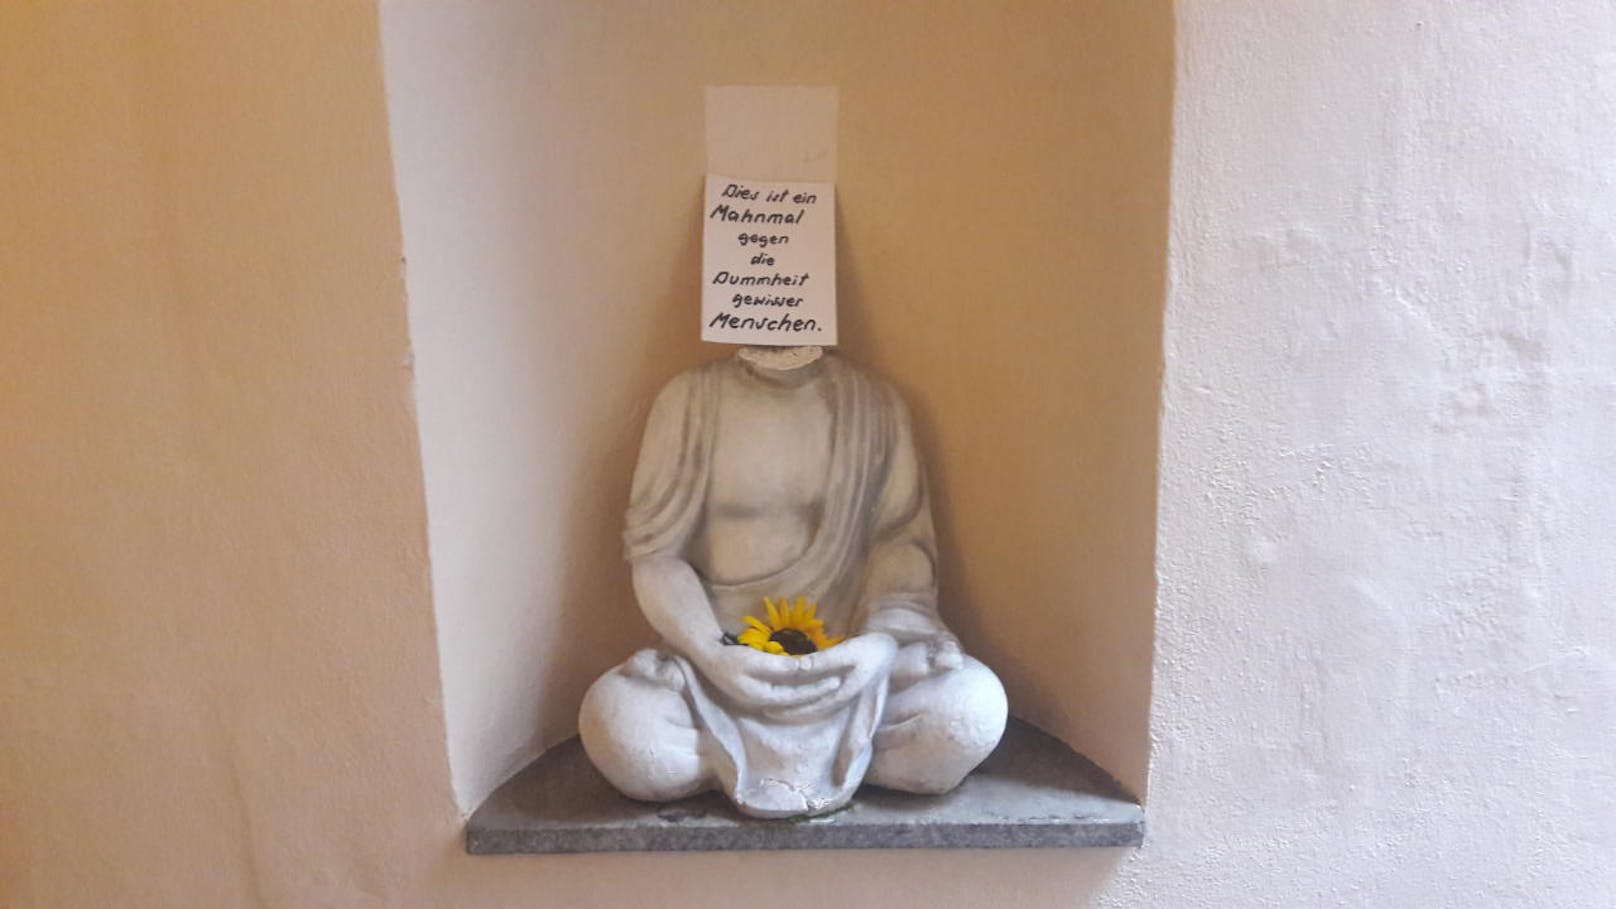 Buddha-Statue in Linz wurde der Kopf abgeschlagen. Jetzt ist es ein "Mahnmal gegen die Dummheit".